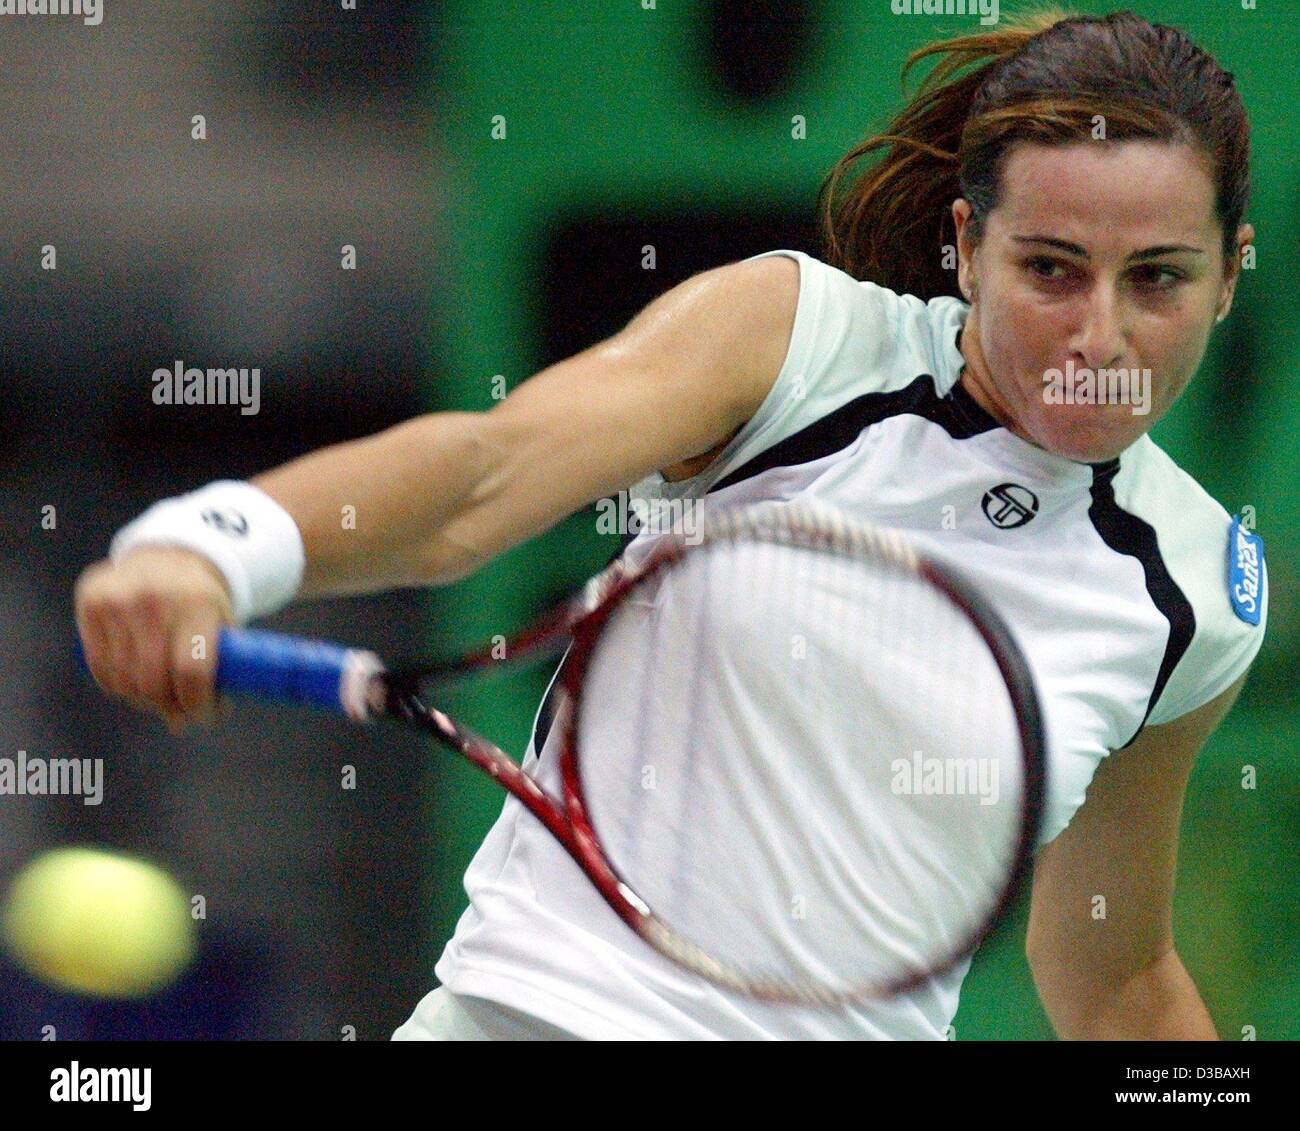 (Dpa) - Italia di Silvia Farina Elia restituisce una sfera durante l'ottava partita finale del XIII International Sparkassen Cup torneo WTA a Leipzig, Germania, 26 settembre 2002. Foto Stock